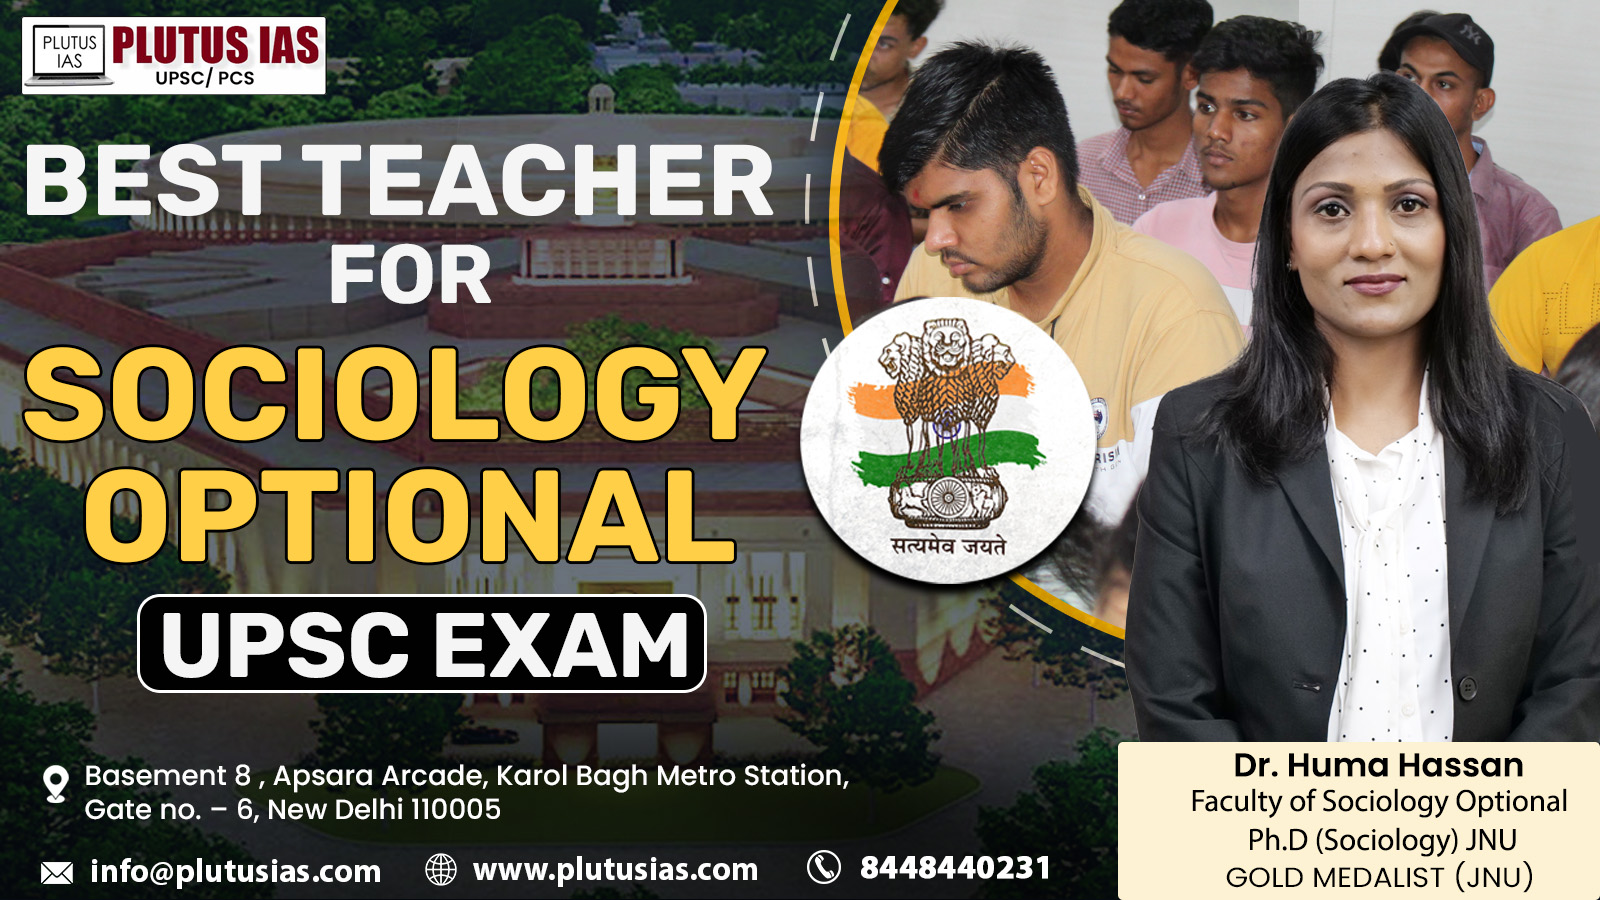 Best Teacher for Sociology Optional UPSC Exam